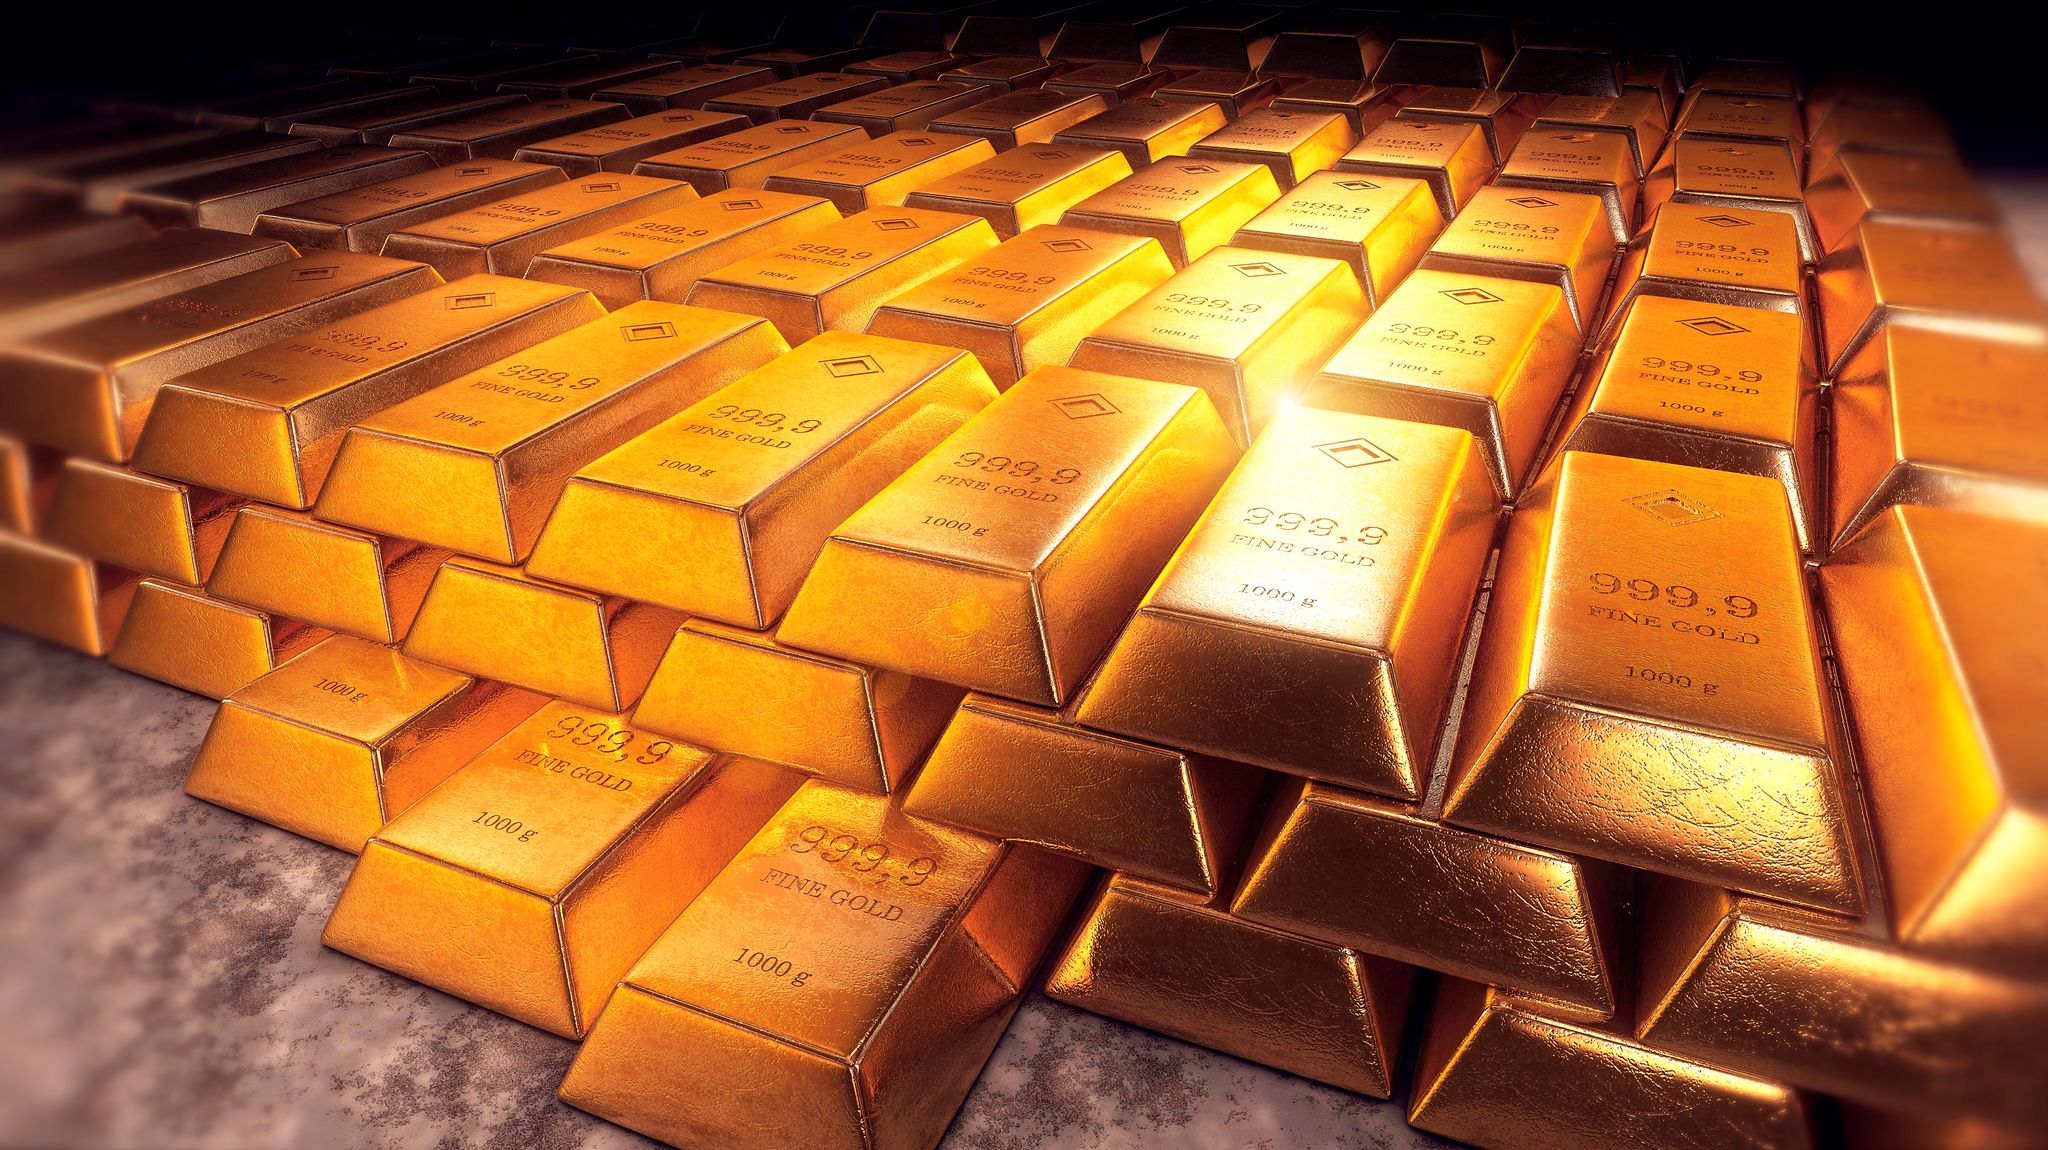 Ce mystère des lingots d'or venus de Russie qui agite la Suisse – L'Express